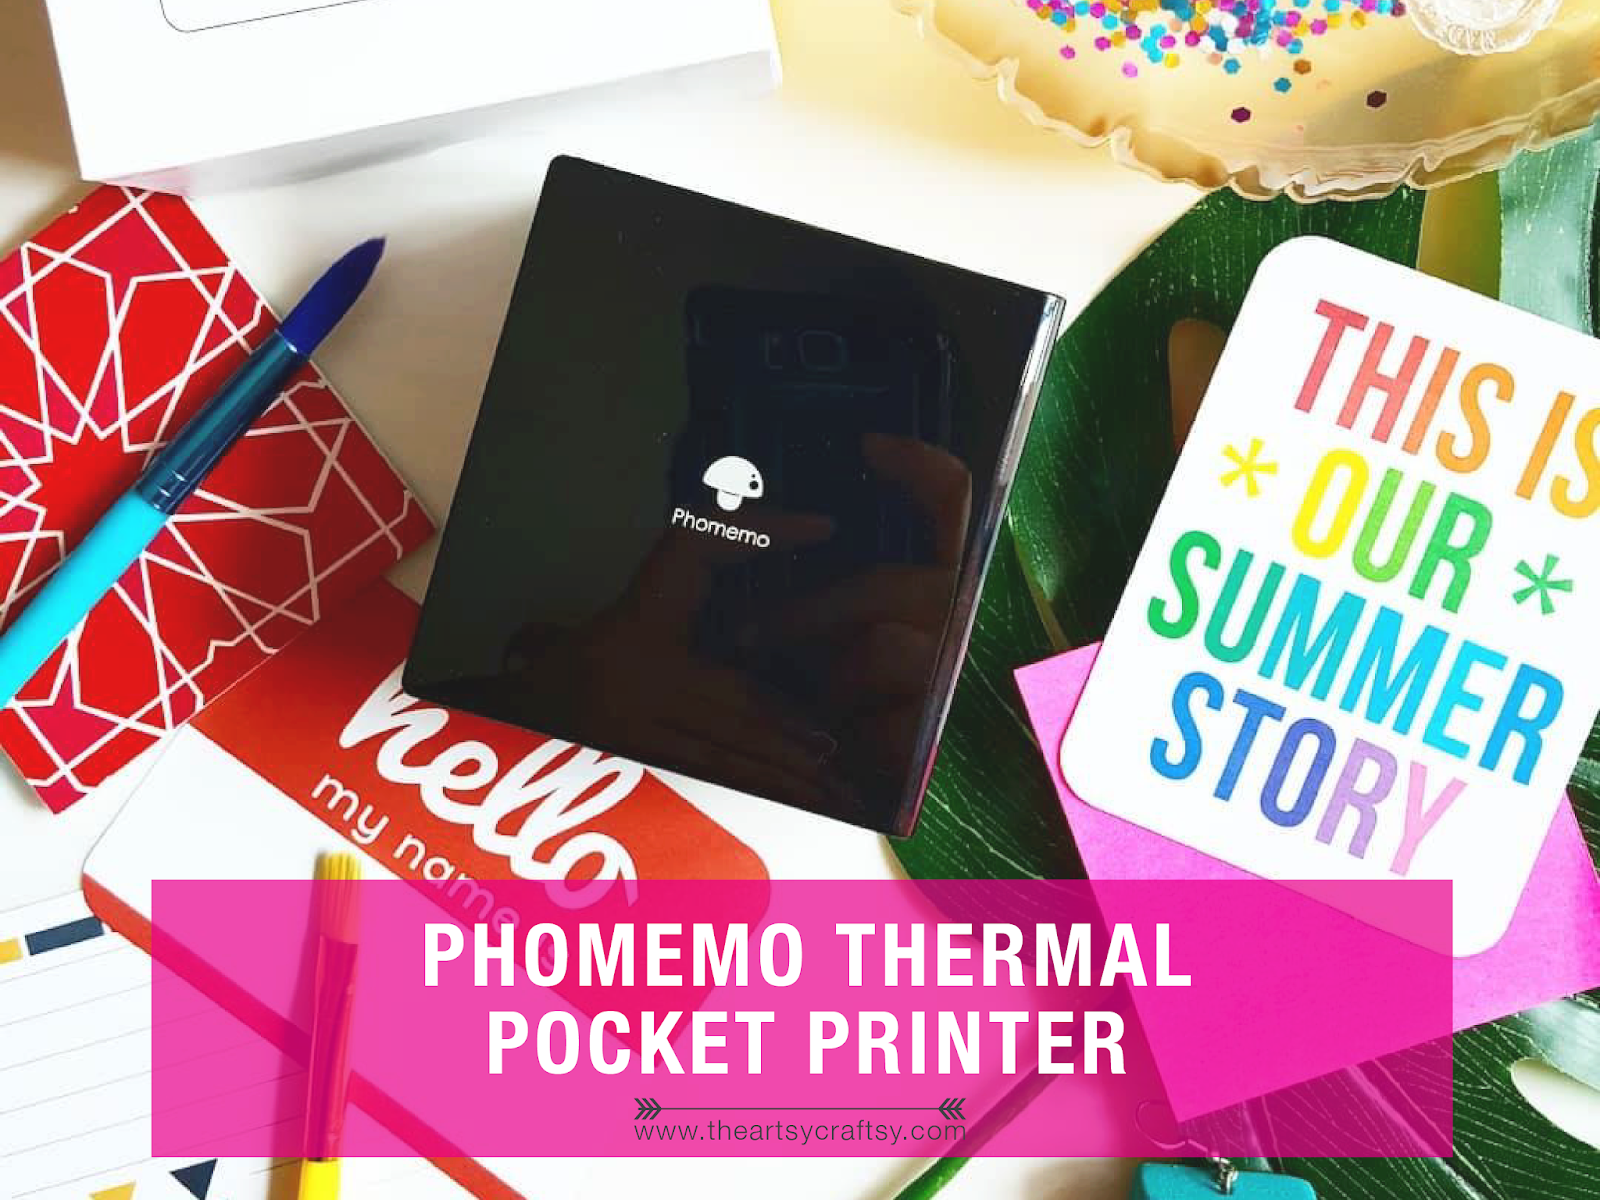 Phomemo Label Printers Review - Super Cute Kawaii!!